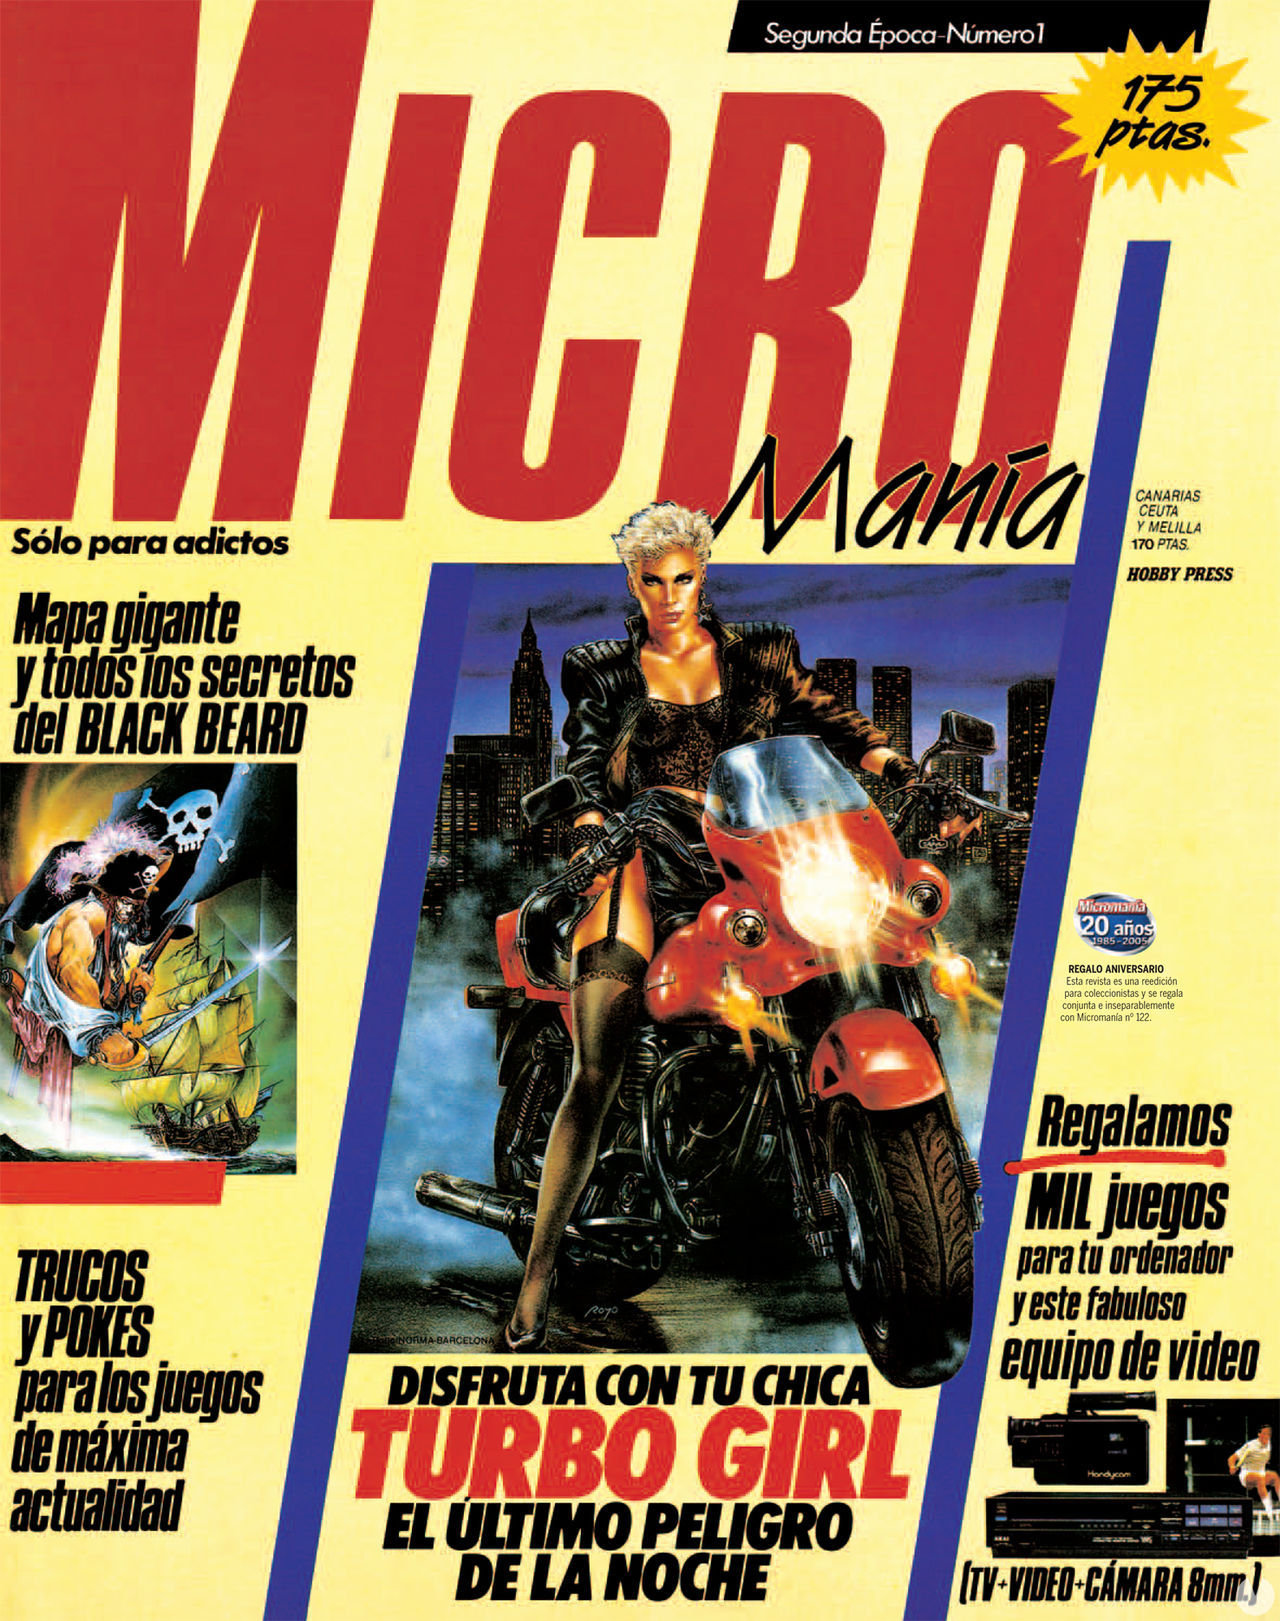 La veterana revista Micromanía cumple 35 años